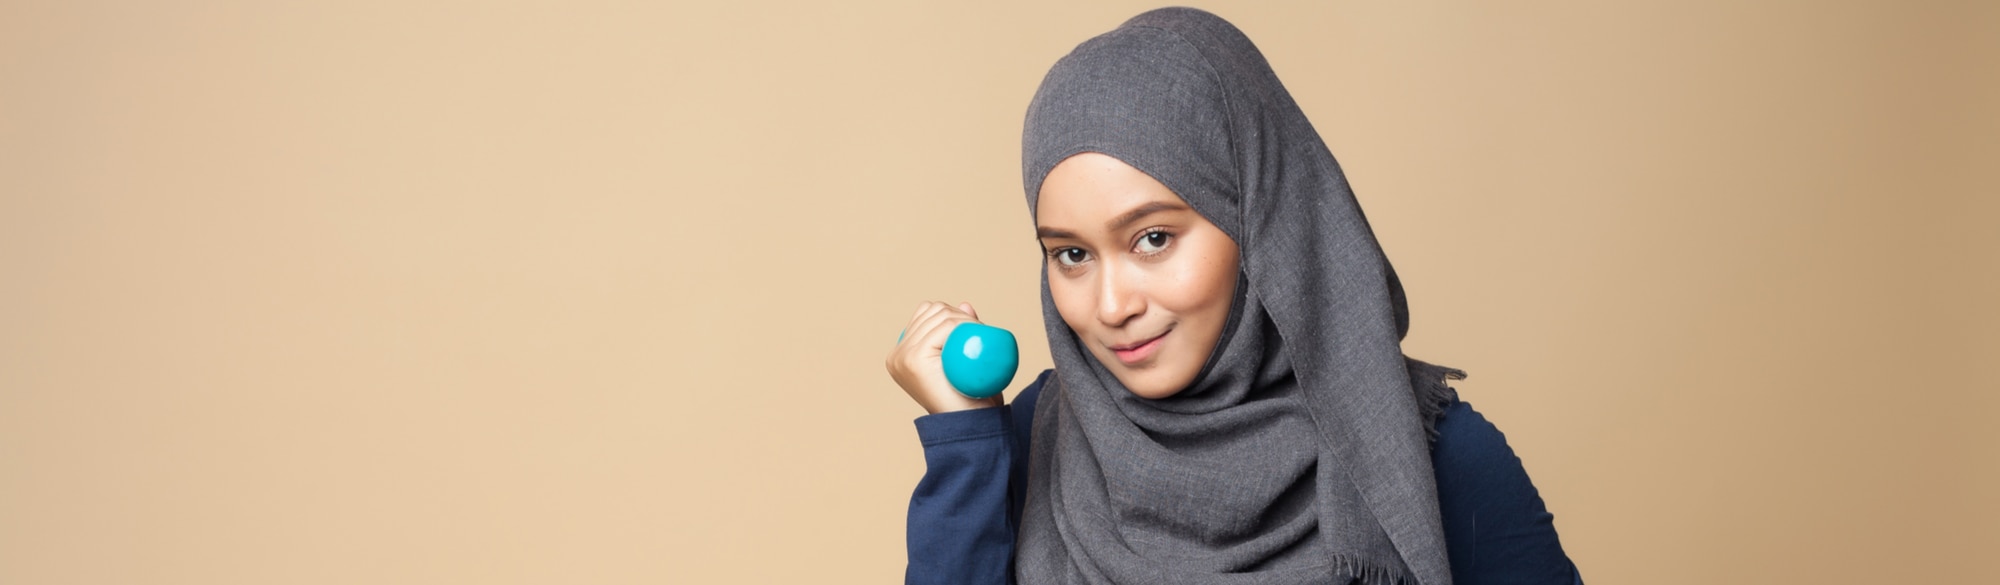 Manfaat Shampo Clear Hijab